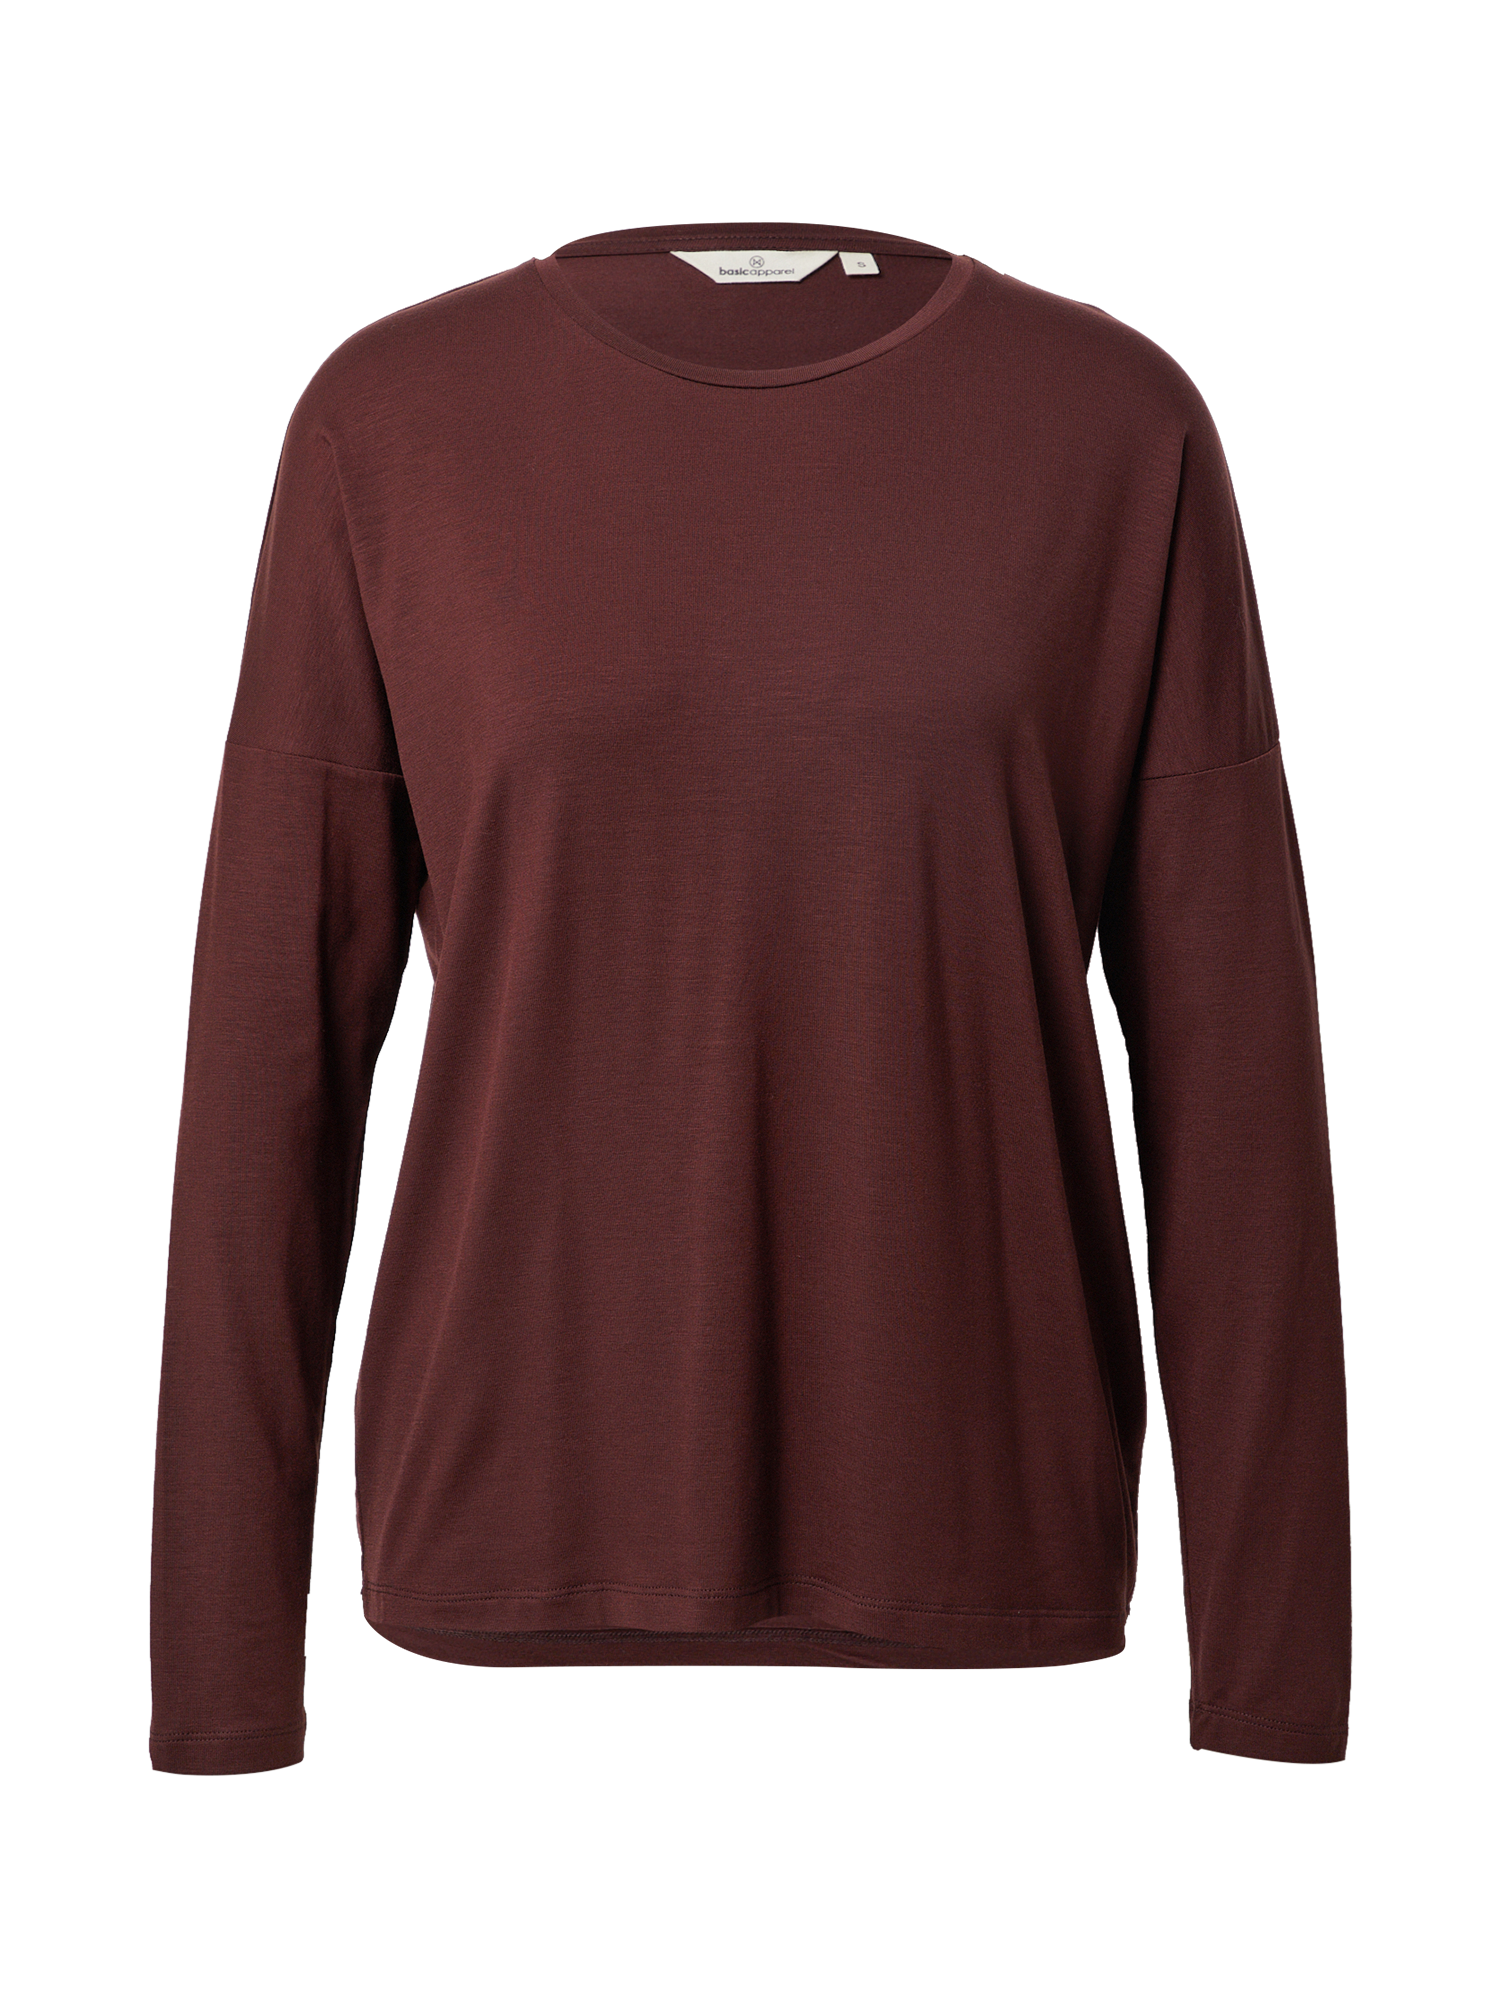 Odzież Kobiety basic apparel Koszulka Joline w kolorze Brązowym 